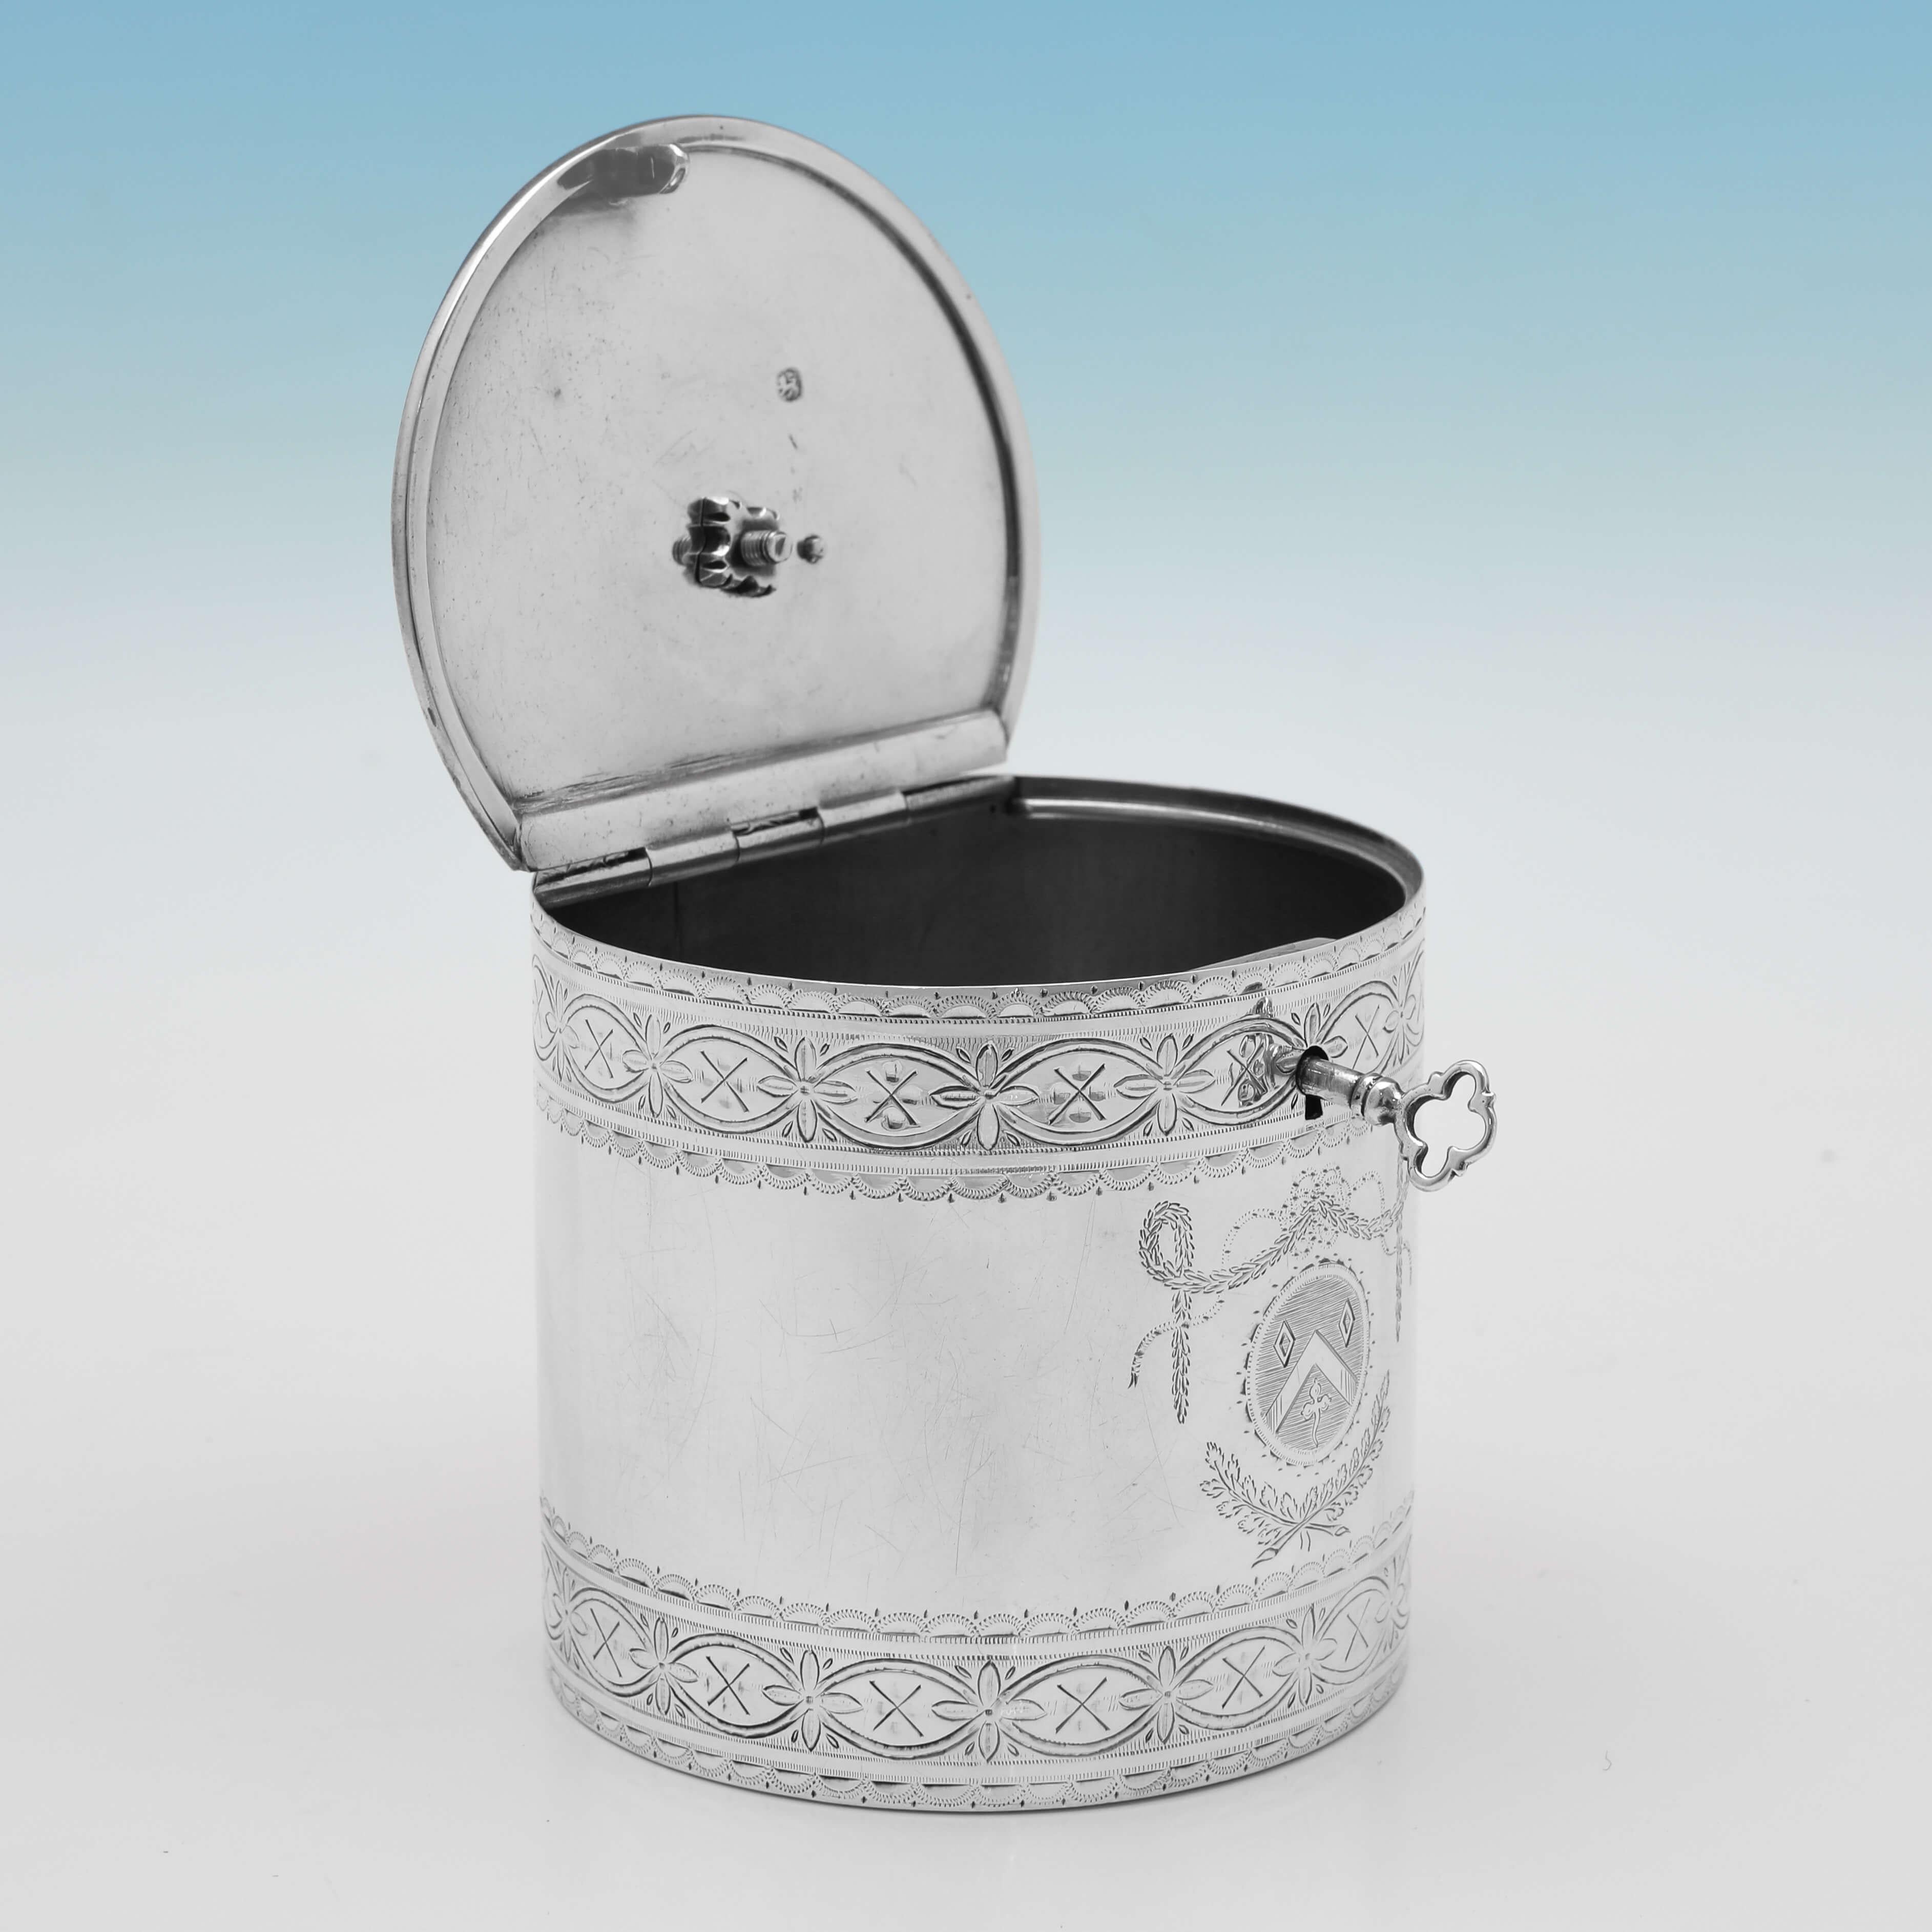 1775 in London von Walter Brind gepunzt, ist diese charmante, antike Teedose aus Sterlingsilber aus der Zeit Georgs III. zylindrisch geformt, mit wunderschönem graviertem Dekor auf dem Körper und dem Deckel, dem Originalschlüssel und einem